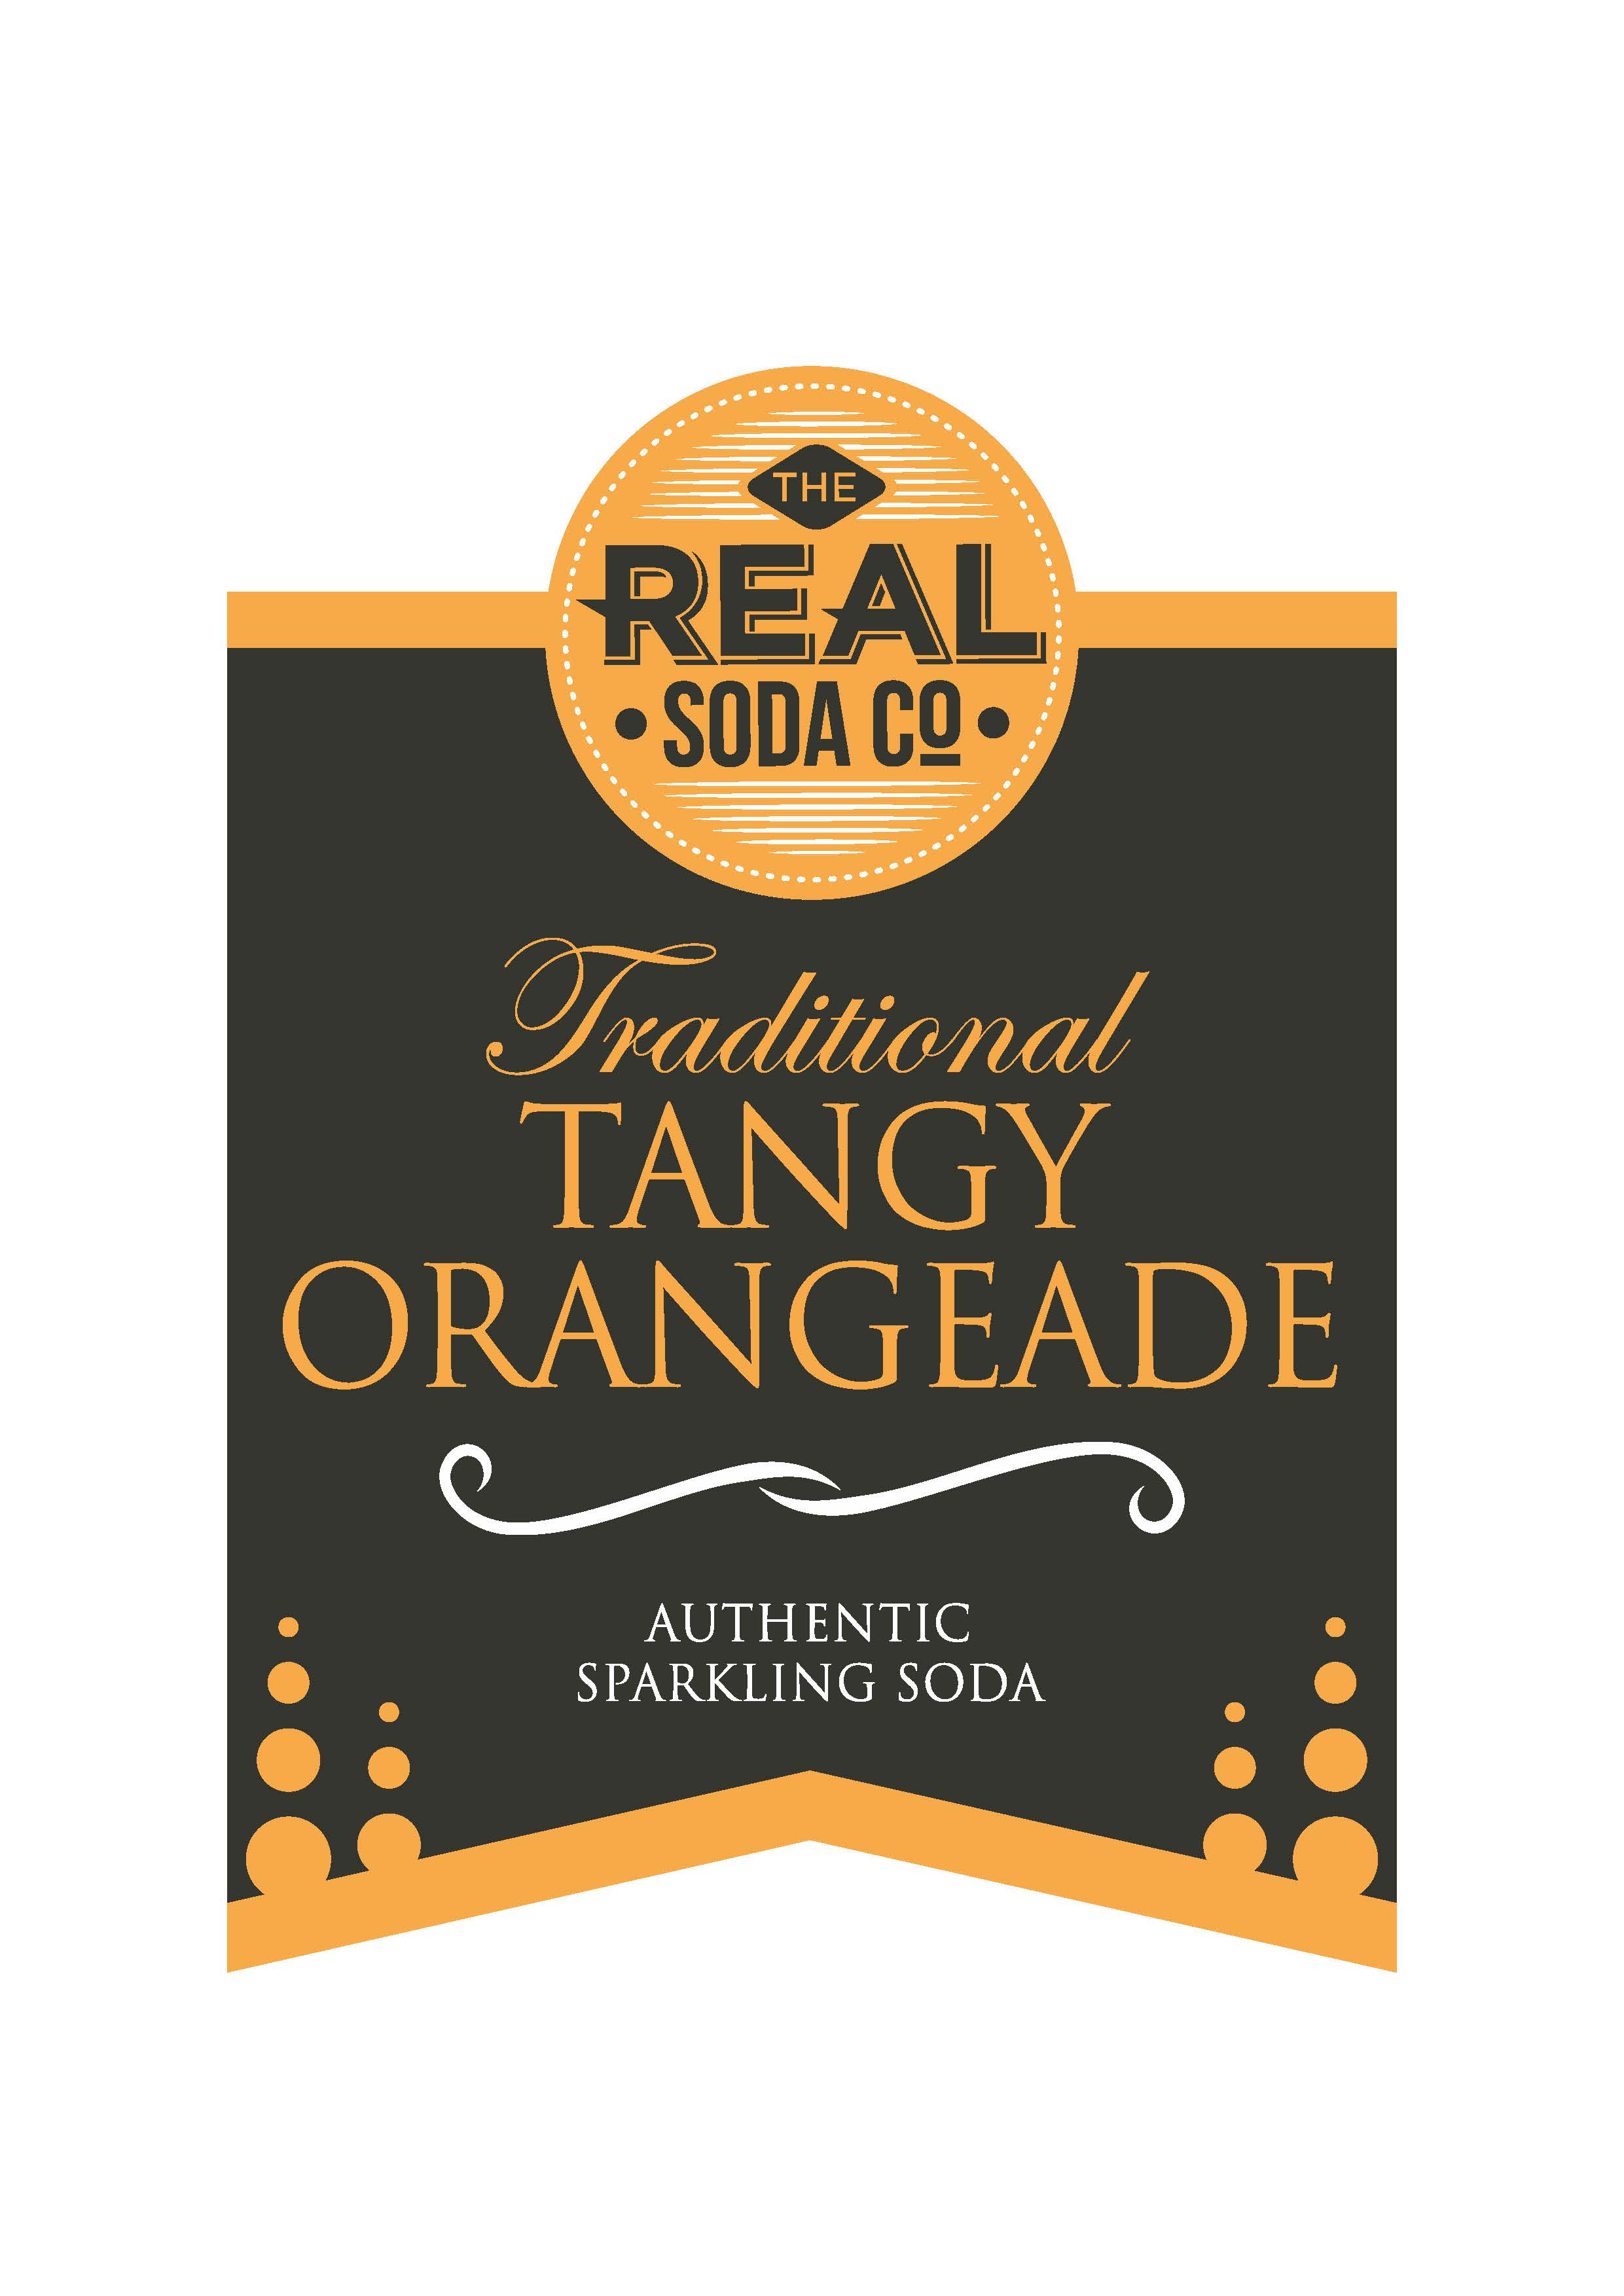 Tangy orangeade